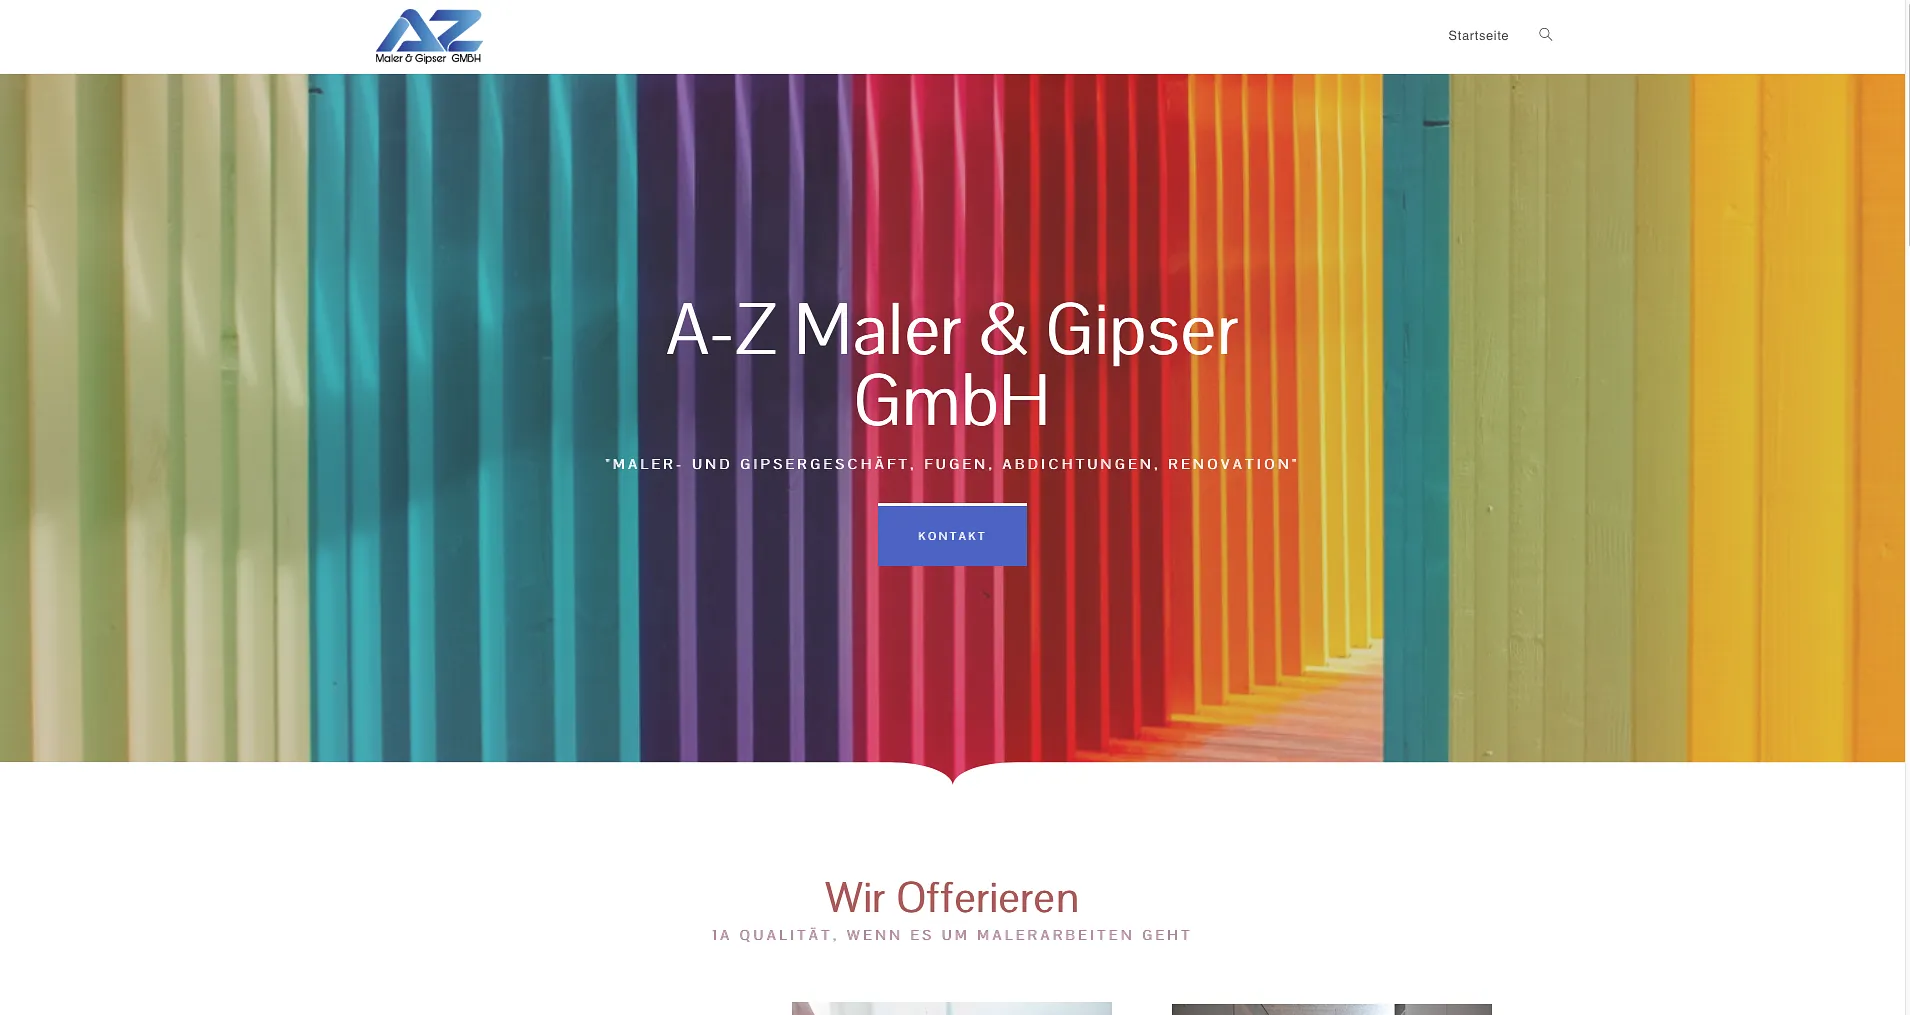 A-Z Maler und Gipser GmbH